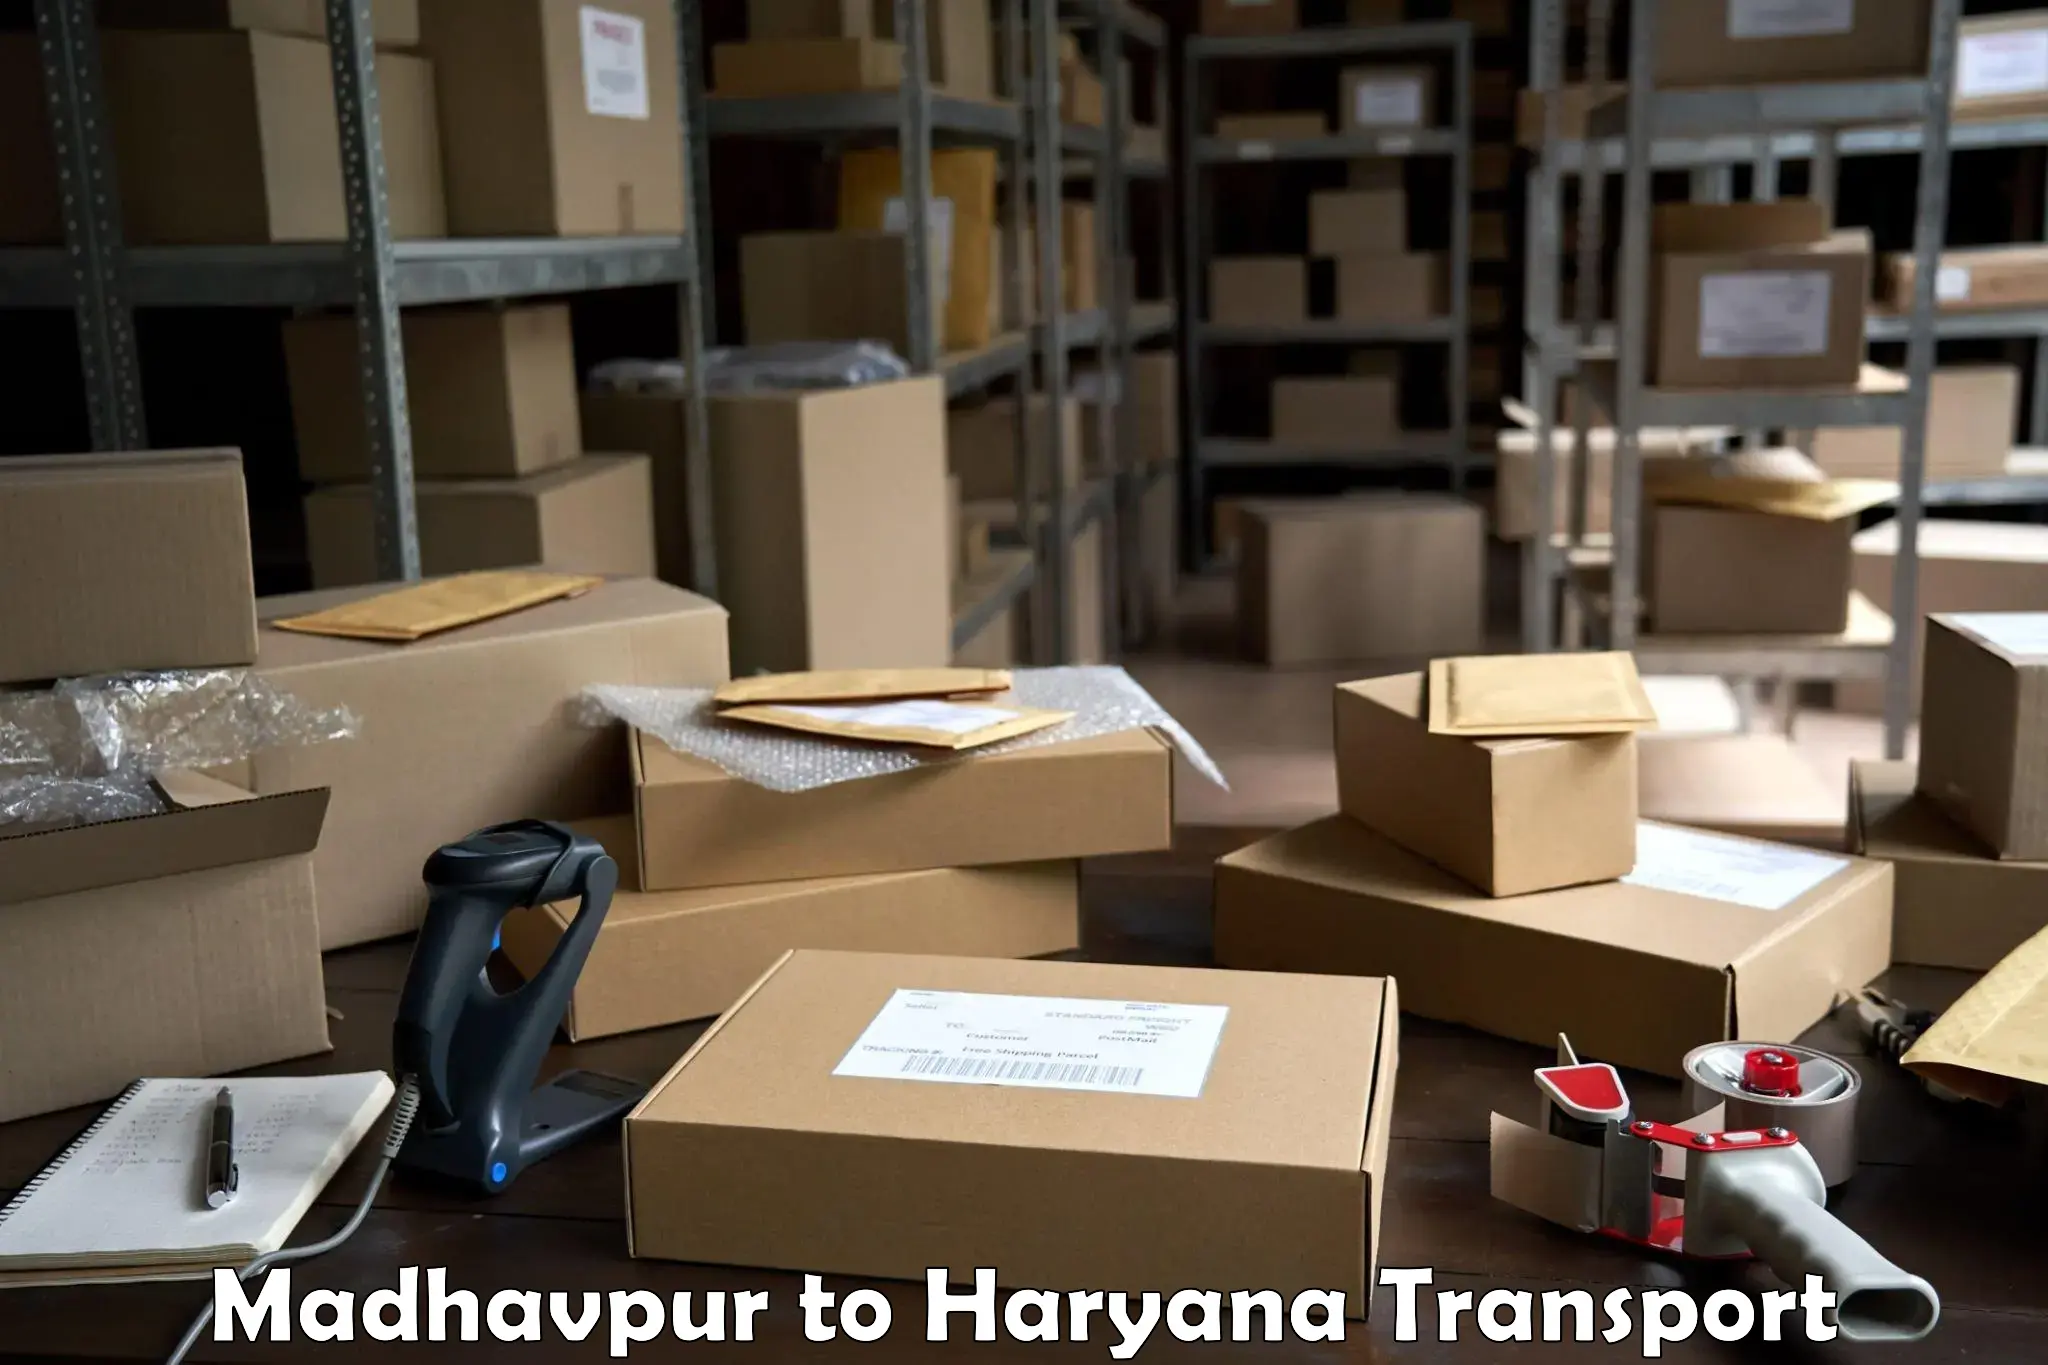 Truck transport companies in India Madhavpur to Kurukshetra University